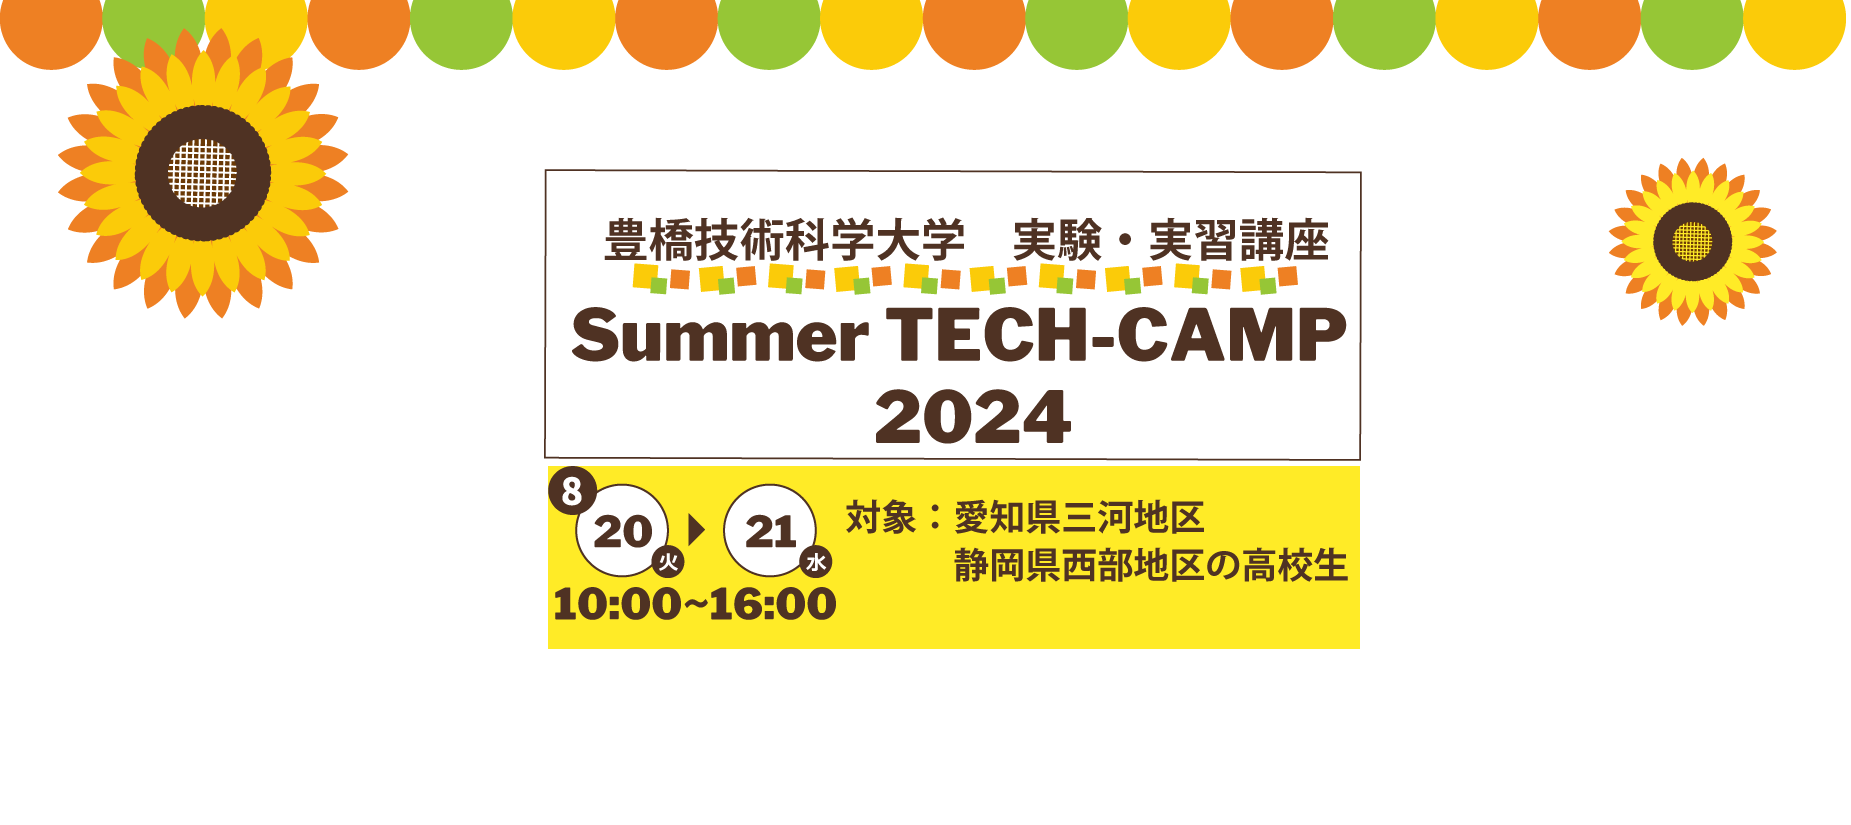 Summer TECH-CAMP 2024